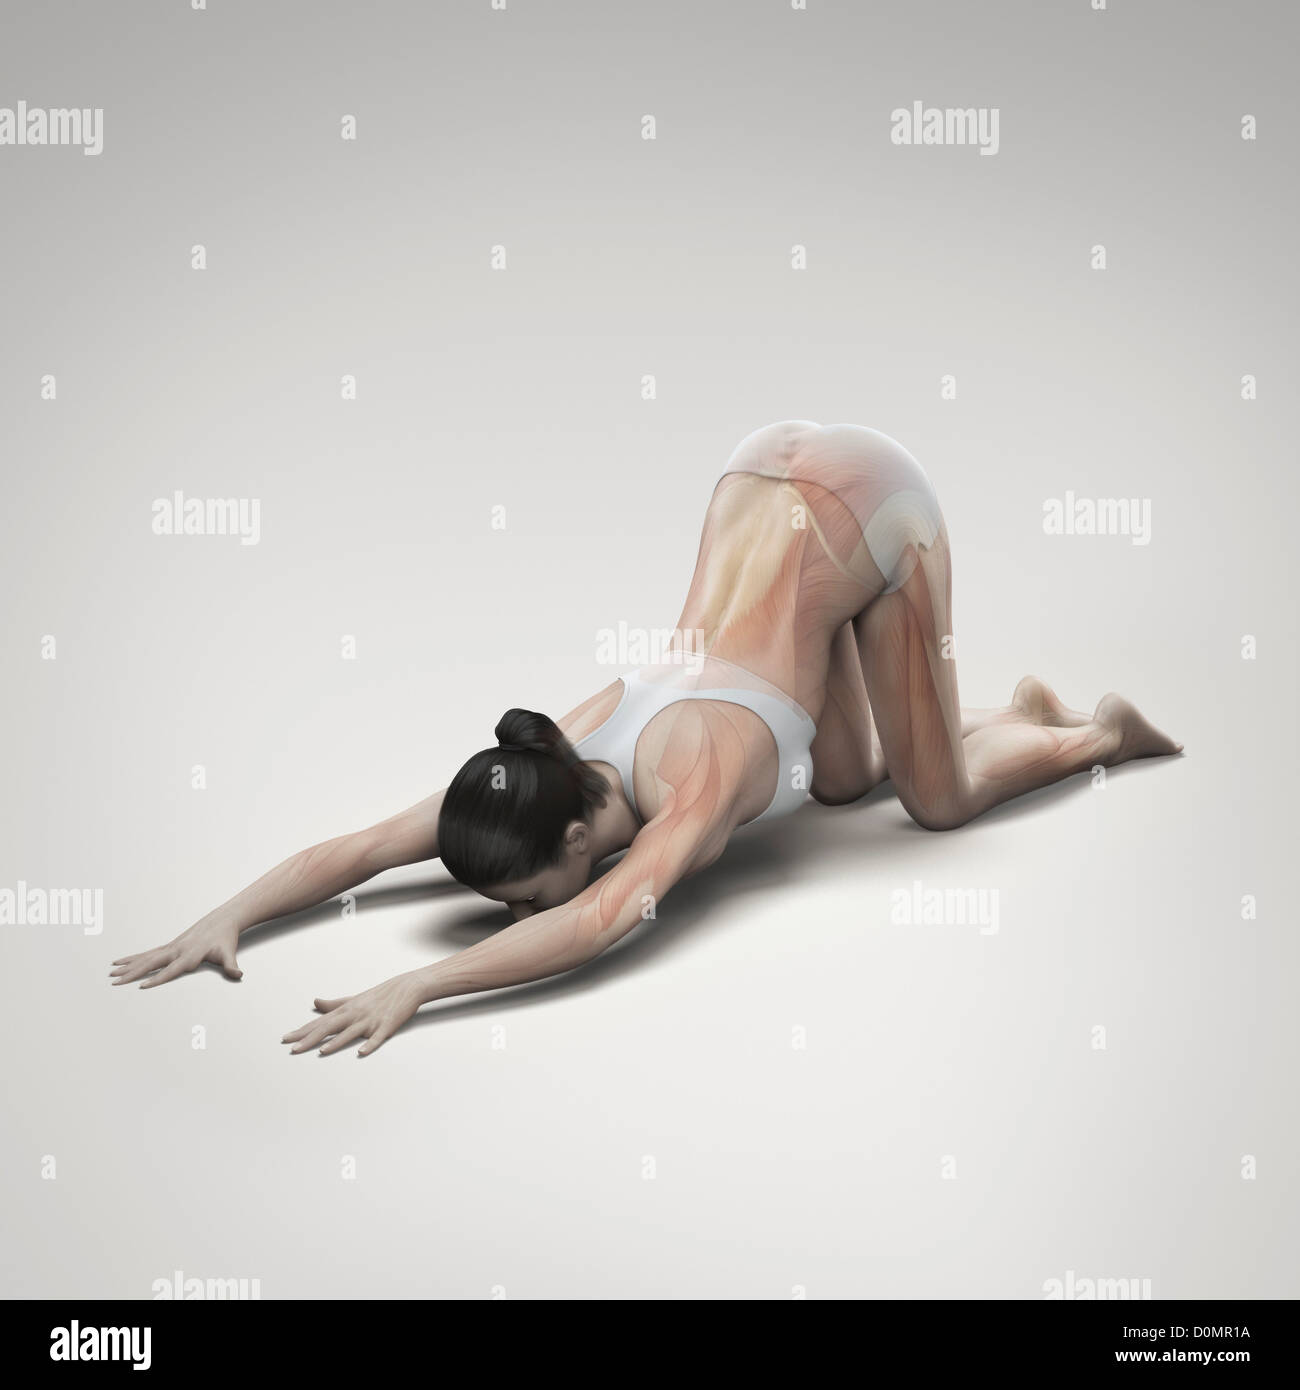 Muskulatur über den weiblichen Körper in erweiterten Welpen Pose zeigt Aktivität bestimmter Muskelgruppen in diesem bestimmten Yoga geschichtet Stockfoto